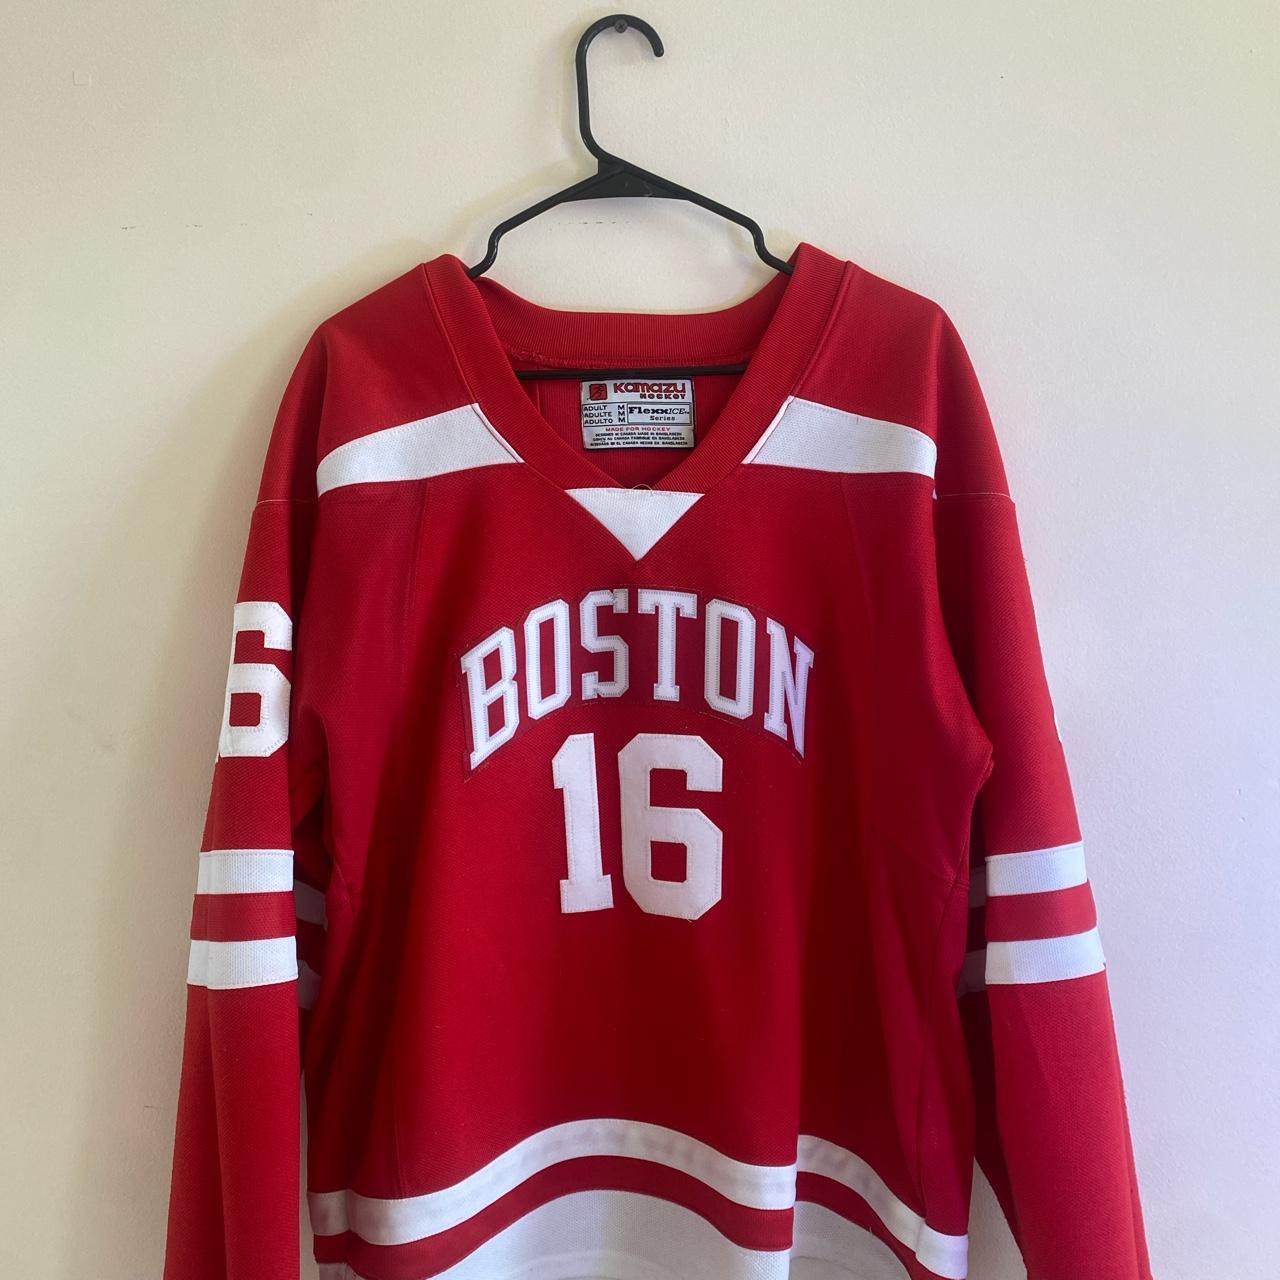 Boston University Hockey Gear, Boston University Hockey T-Shirts